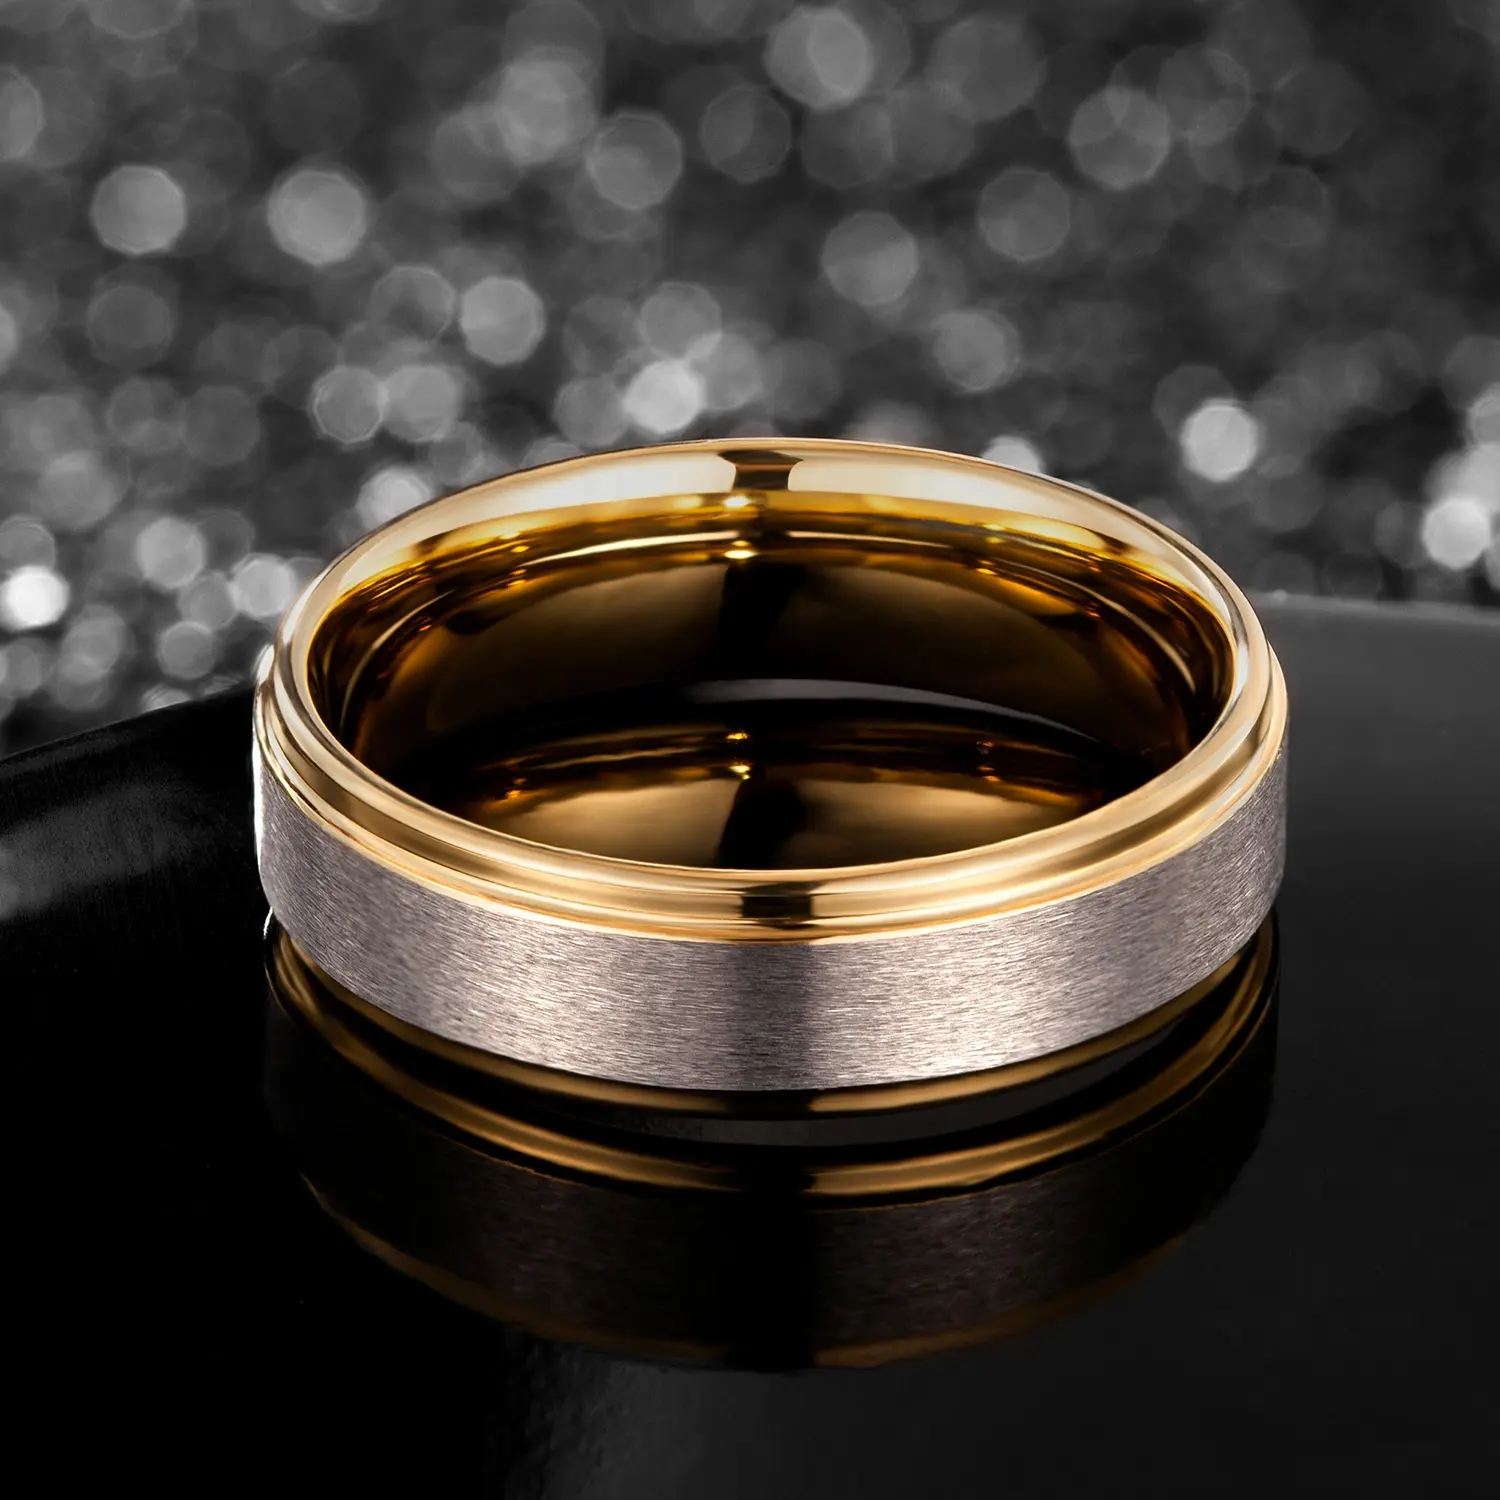 التنغستن كاربايد خاتم الذهب الزفاف العصابات ، مطلية بالذهب 24K الذهب خاتم التنغستن خاتم الزواج للرجال